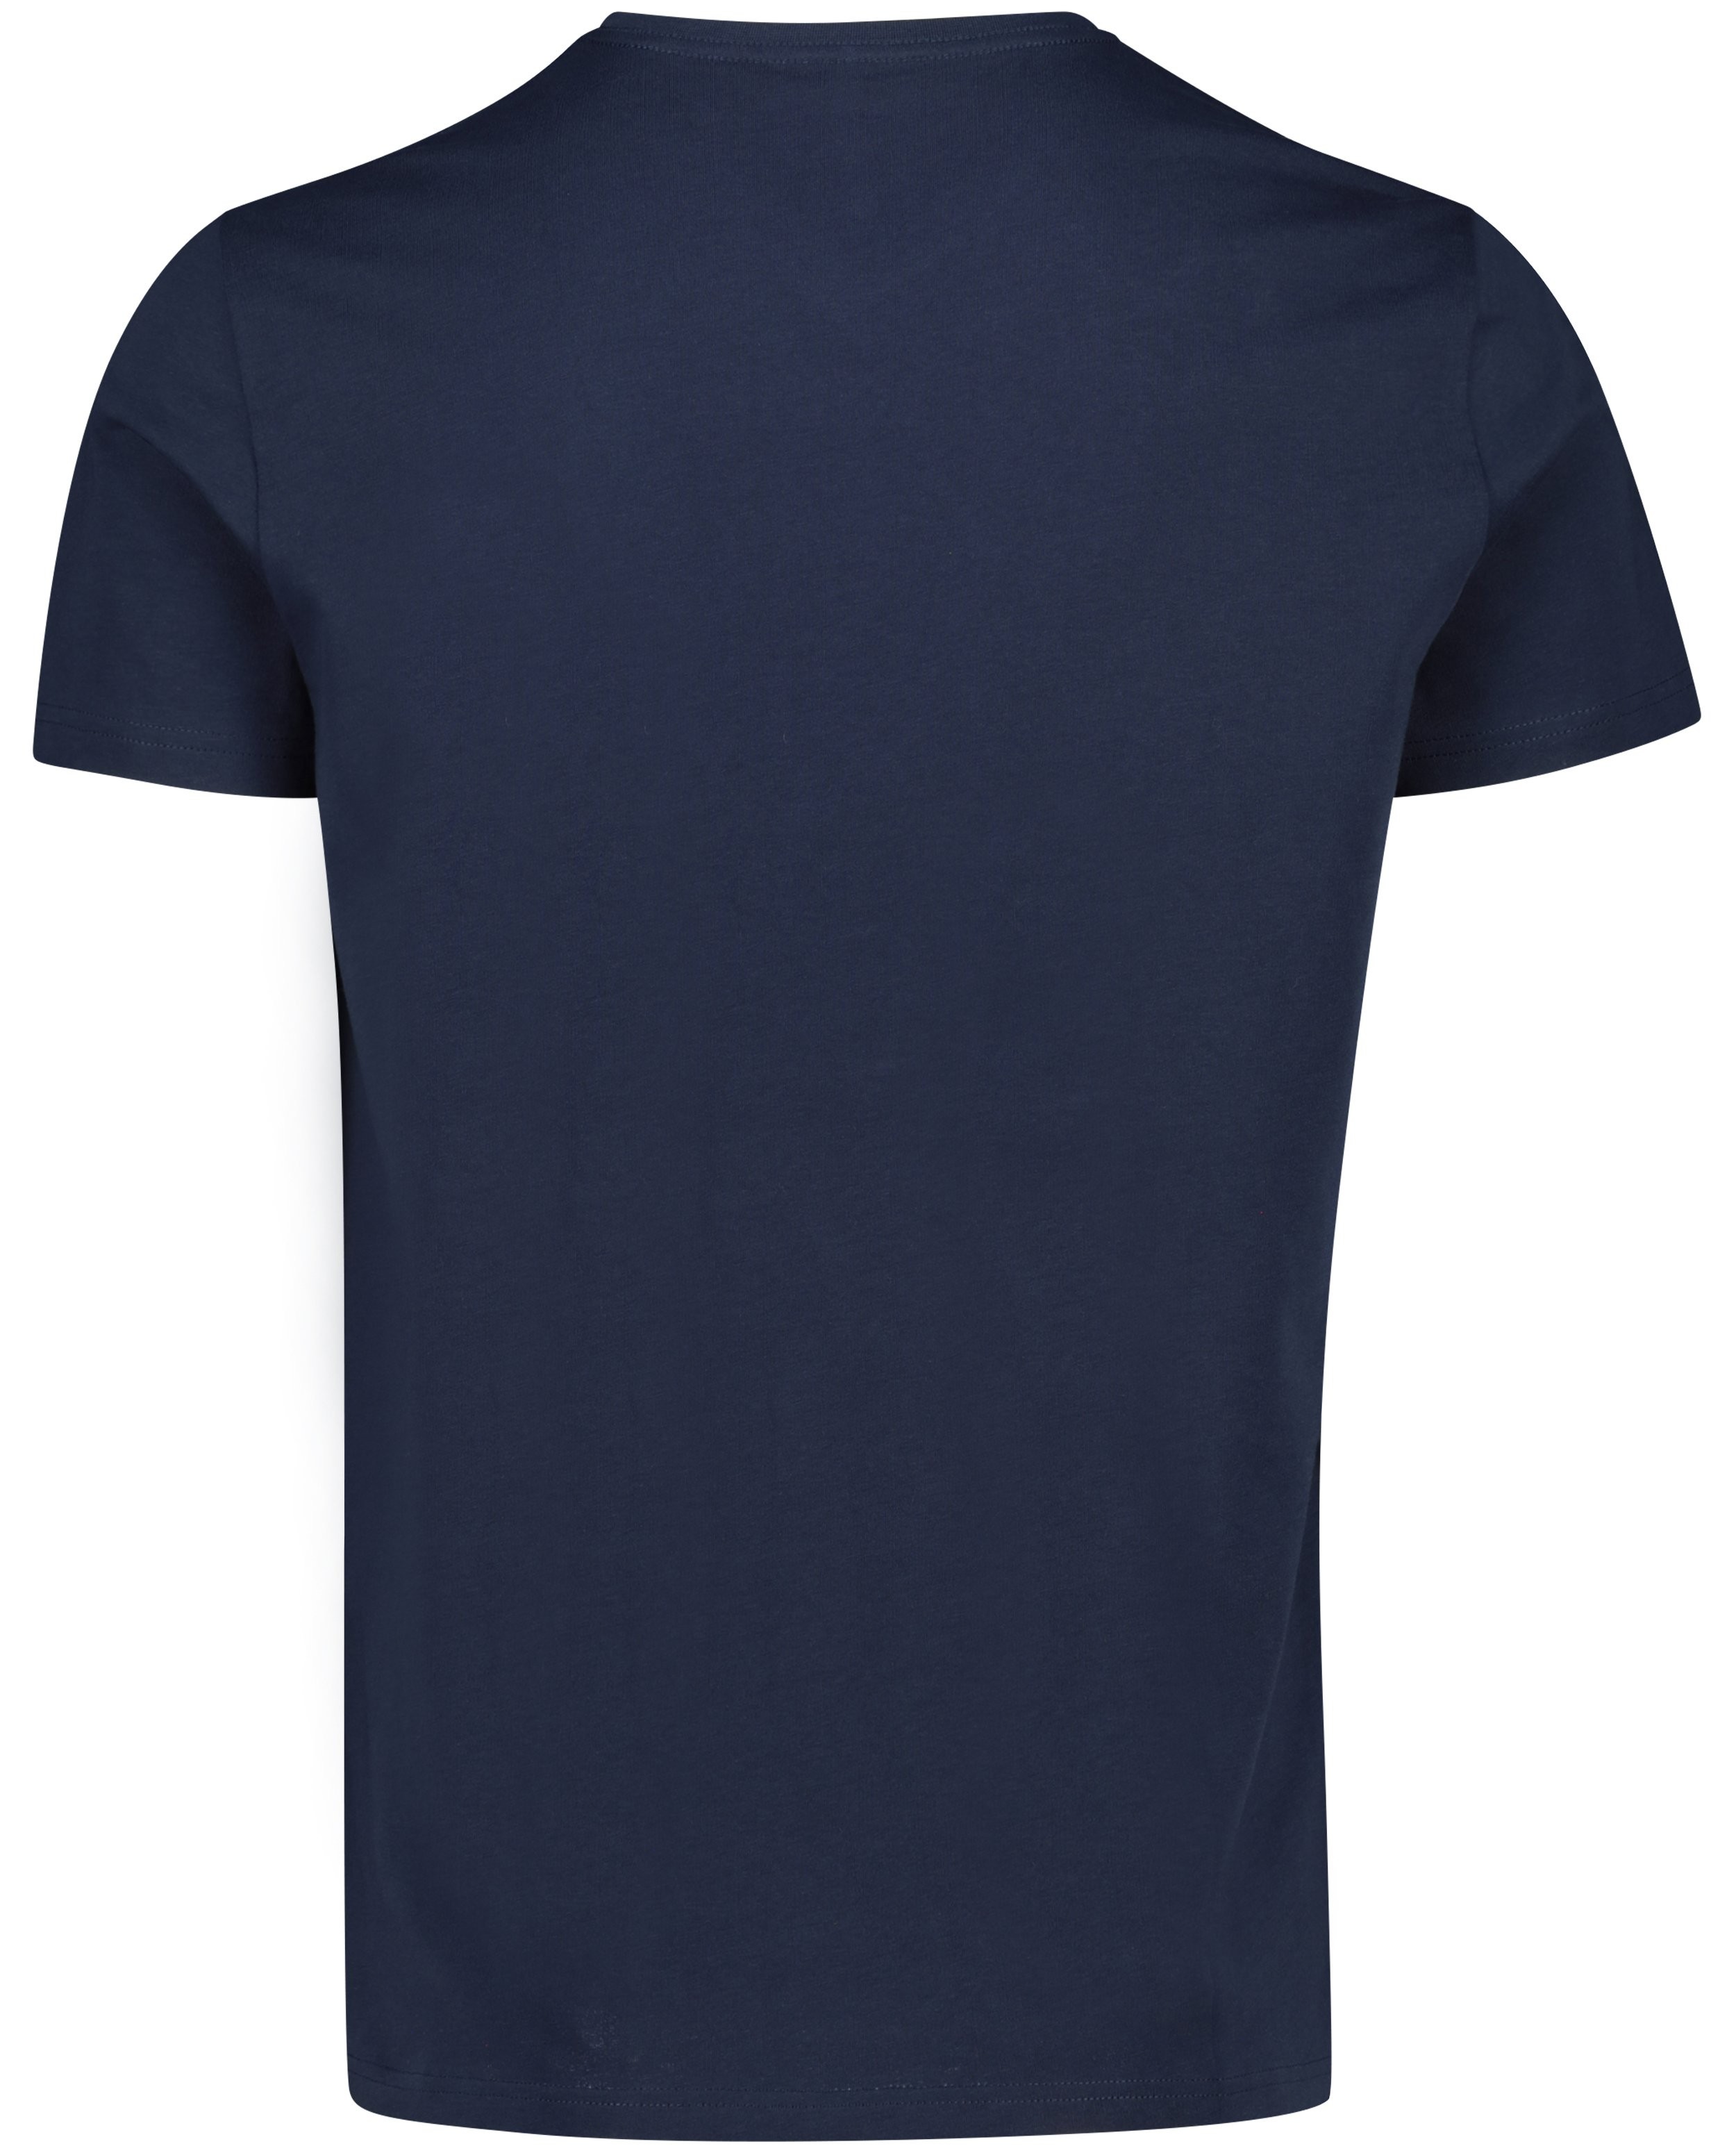 T-shirts - T-shirt bleu foncé en coton bio, col en V 